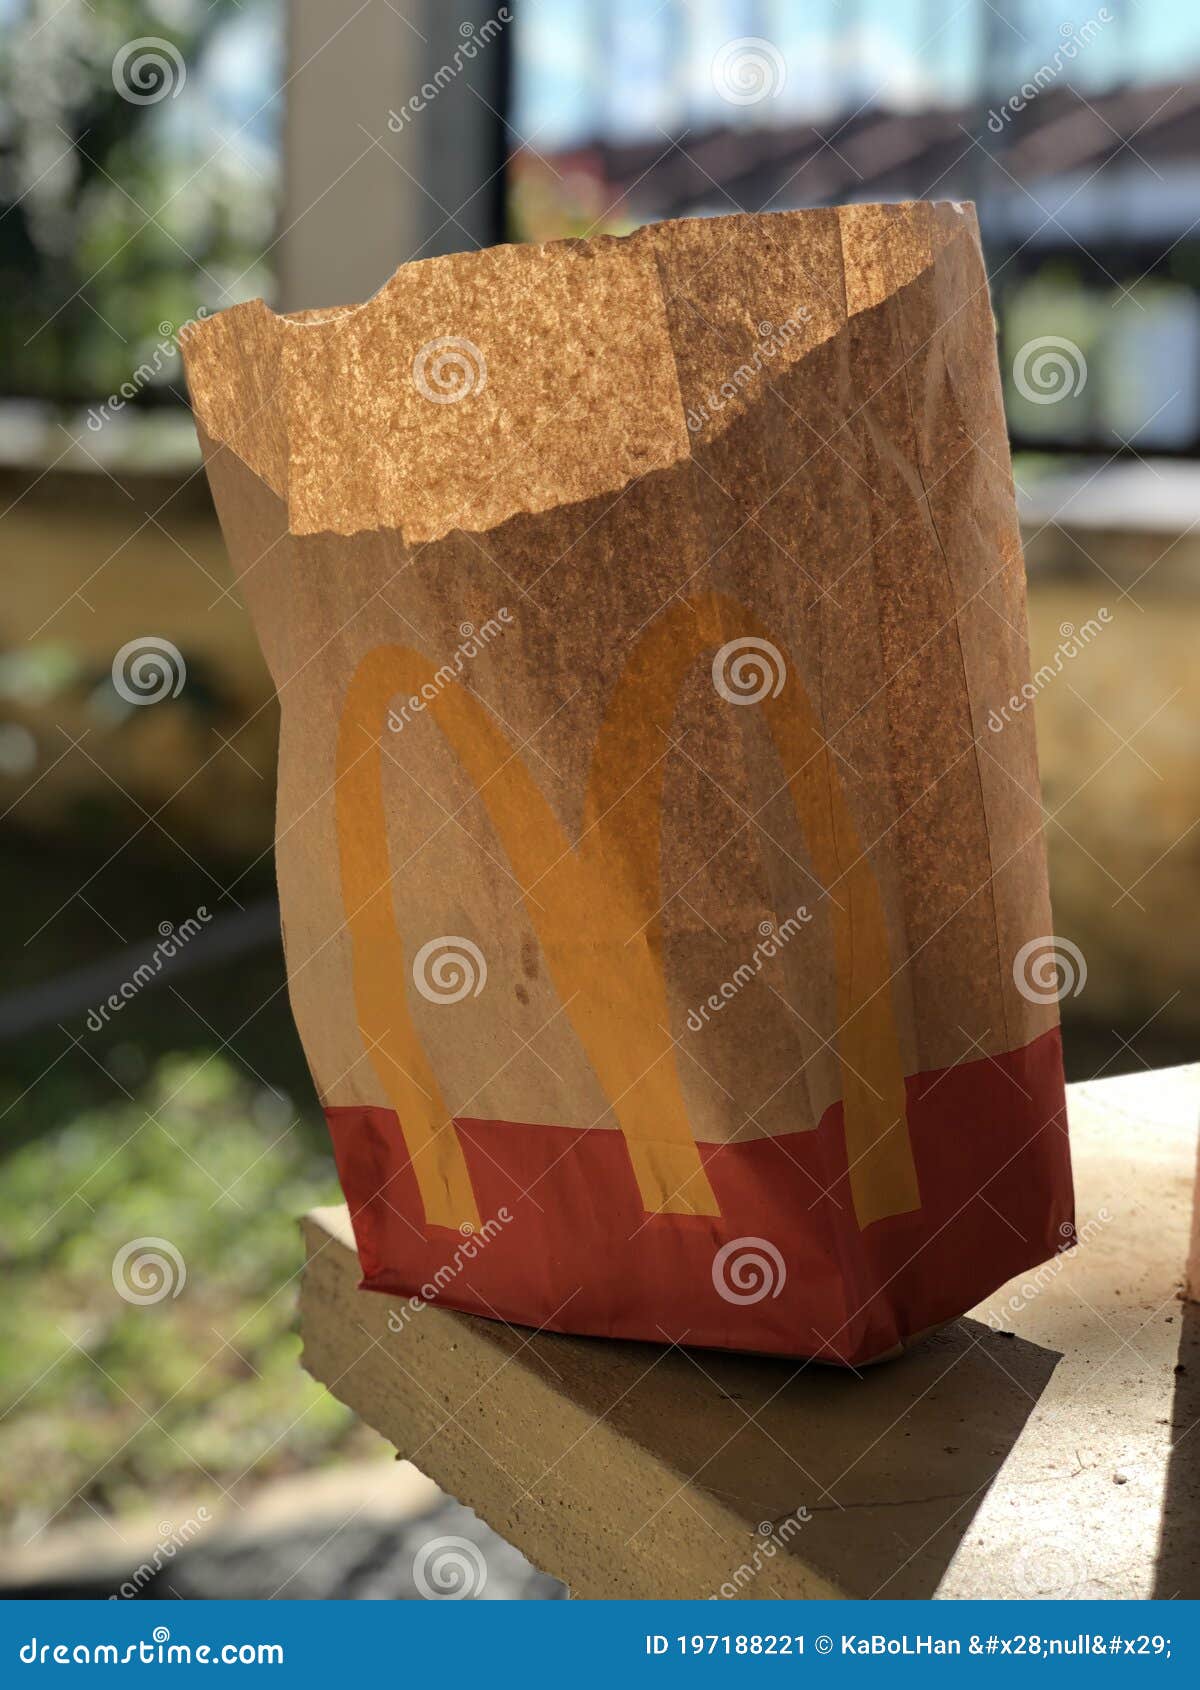 a mcdonalds take away paper bag